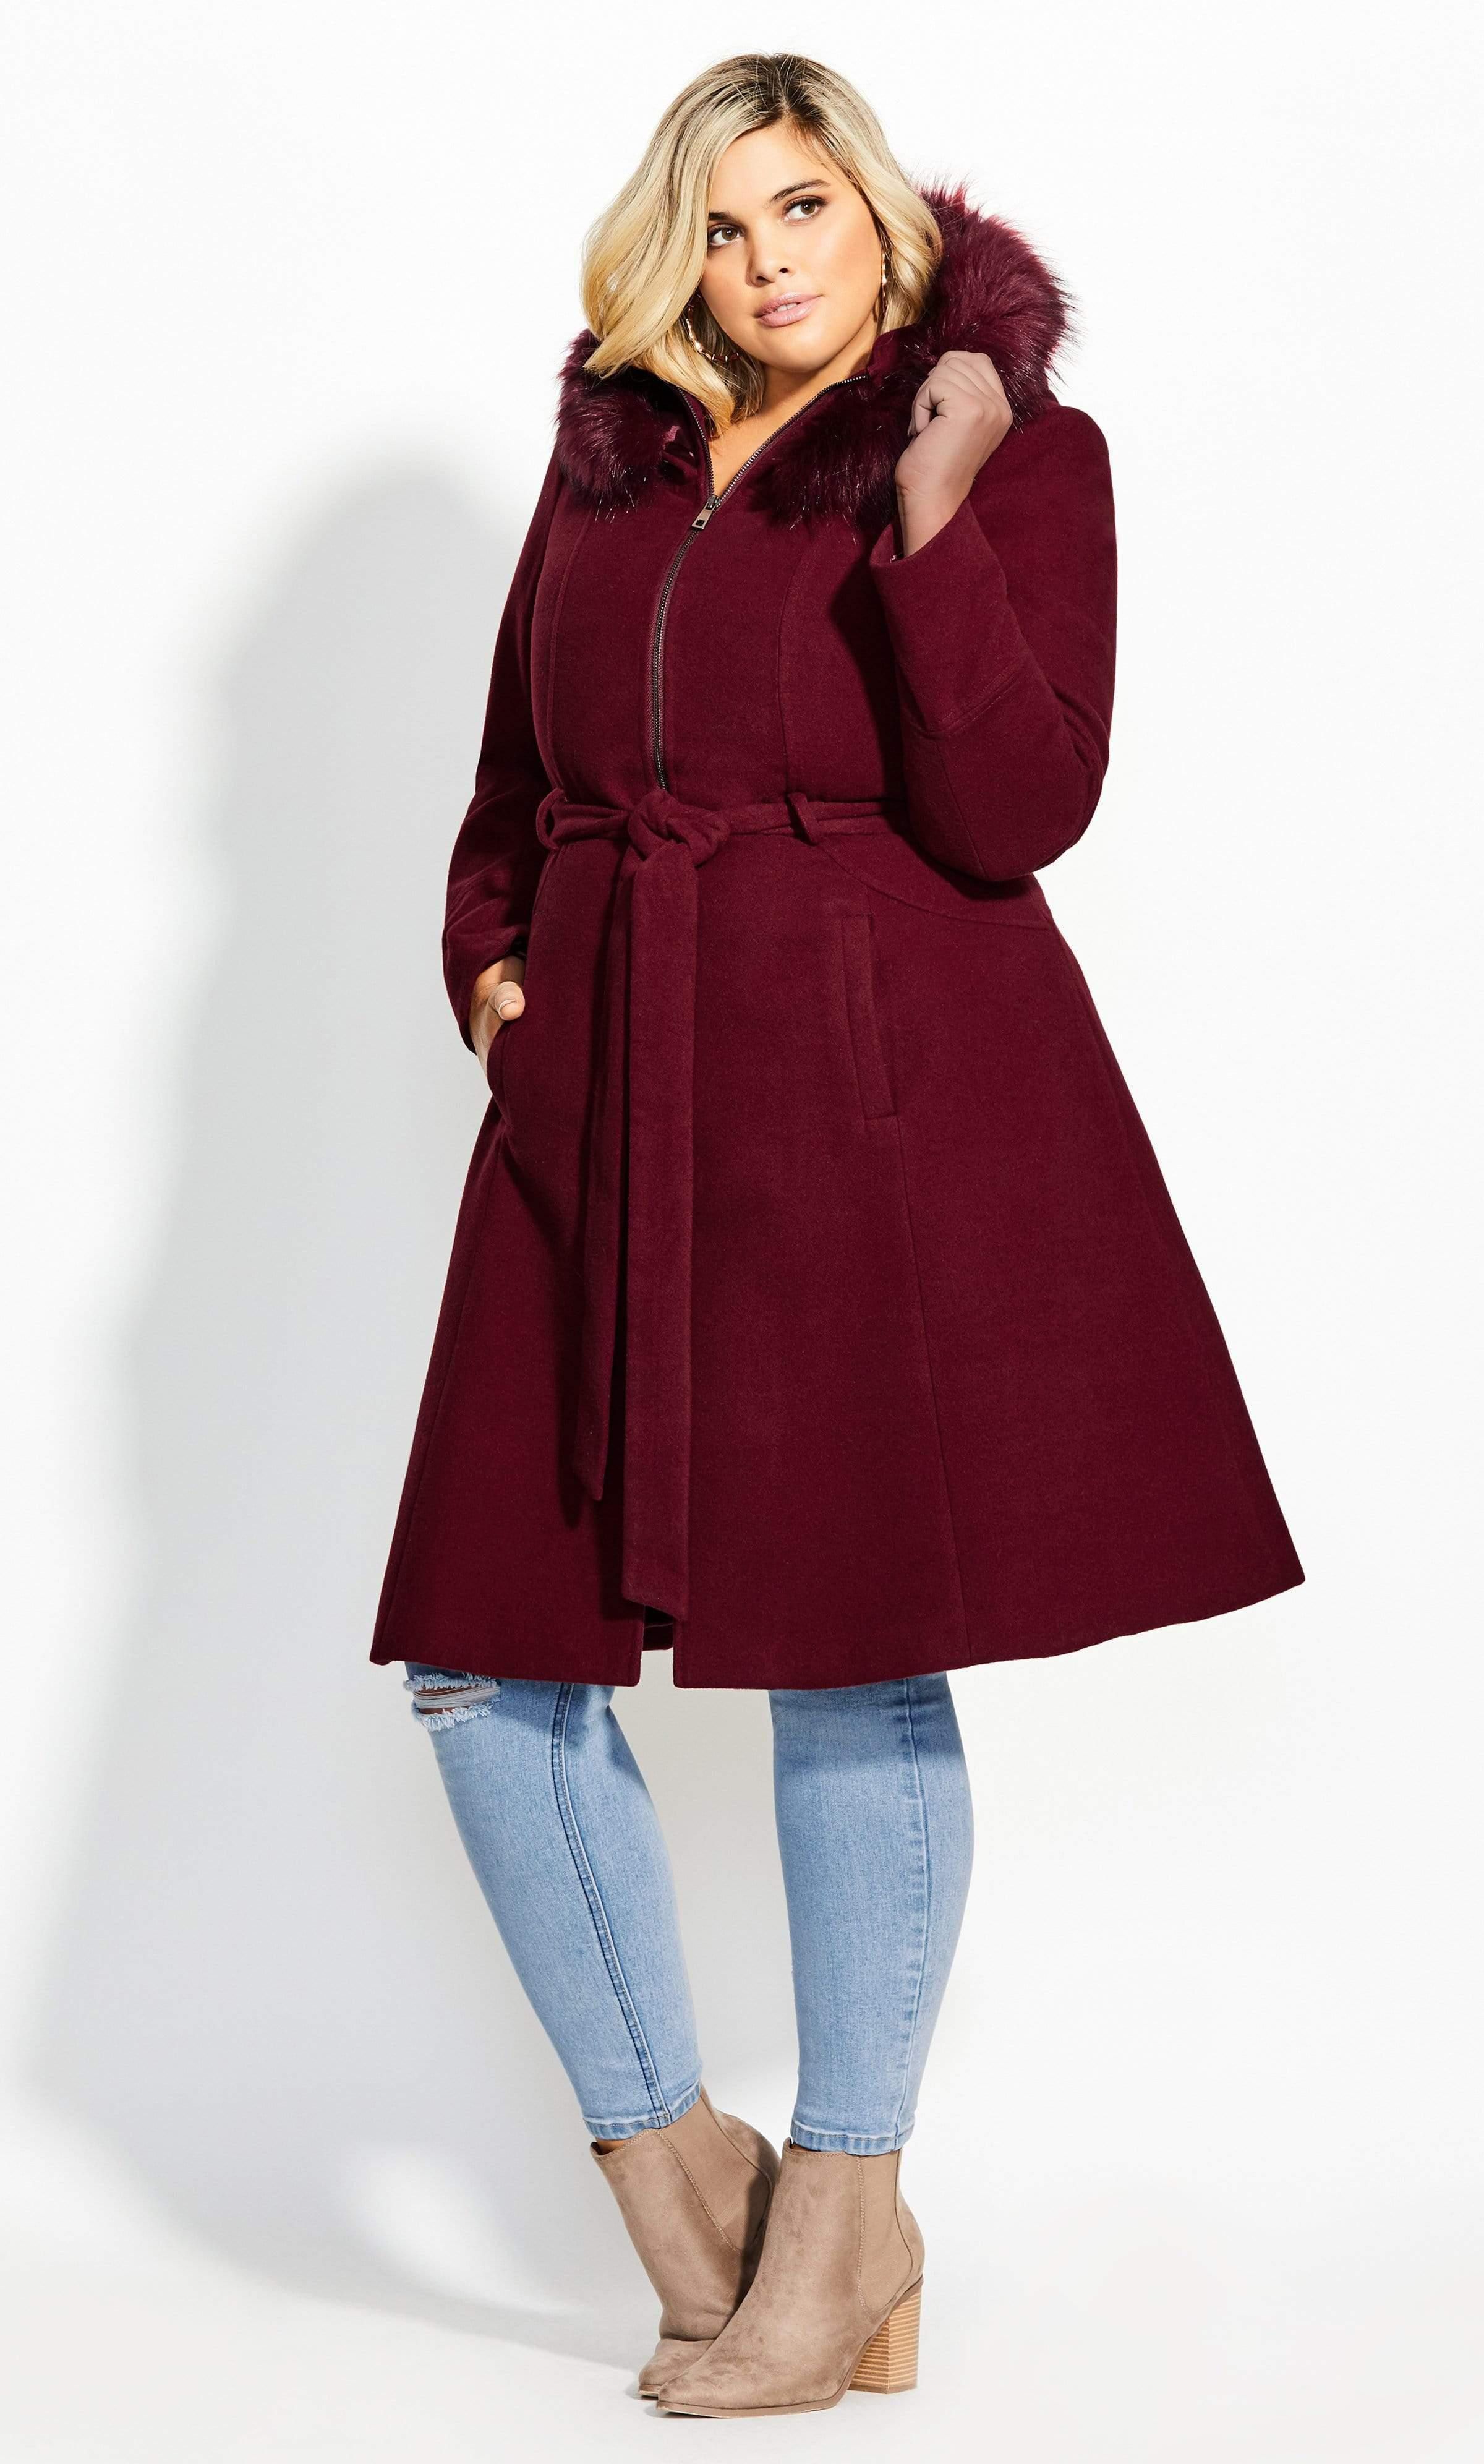 21 Best Plus-Size Winter Coats for Women in 2021